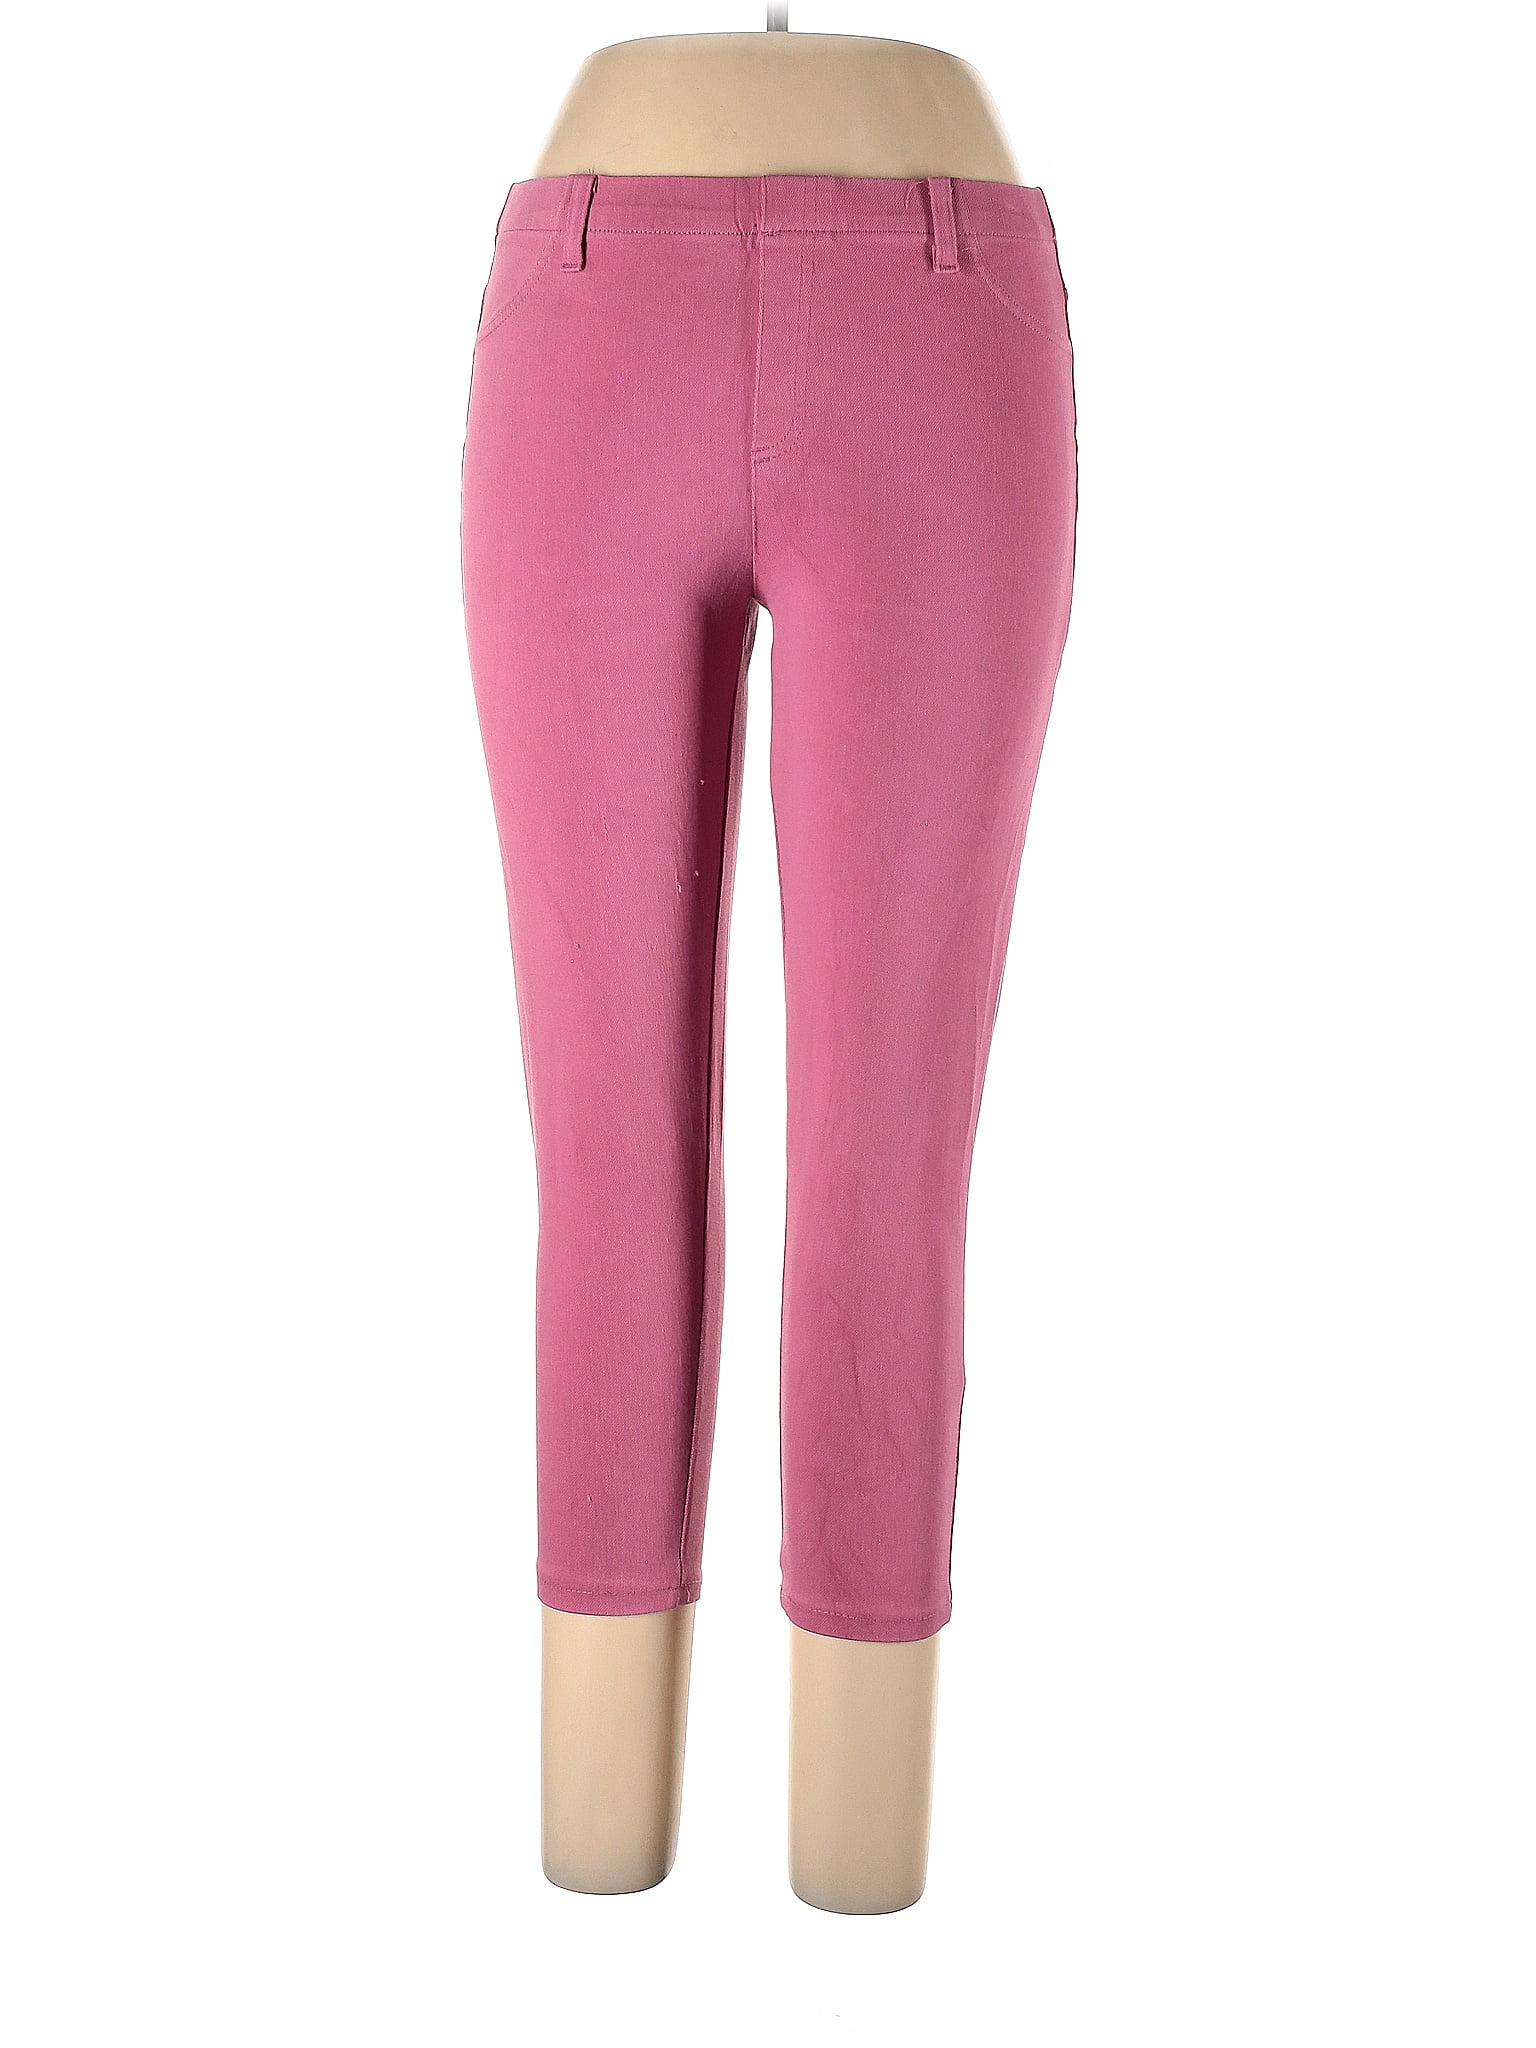 Serra Pink Casual Pants Size L - 56% off | thredUP